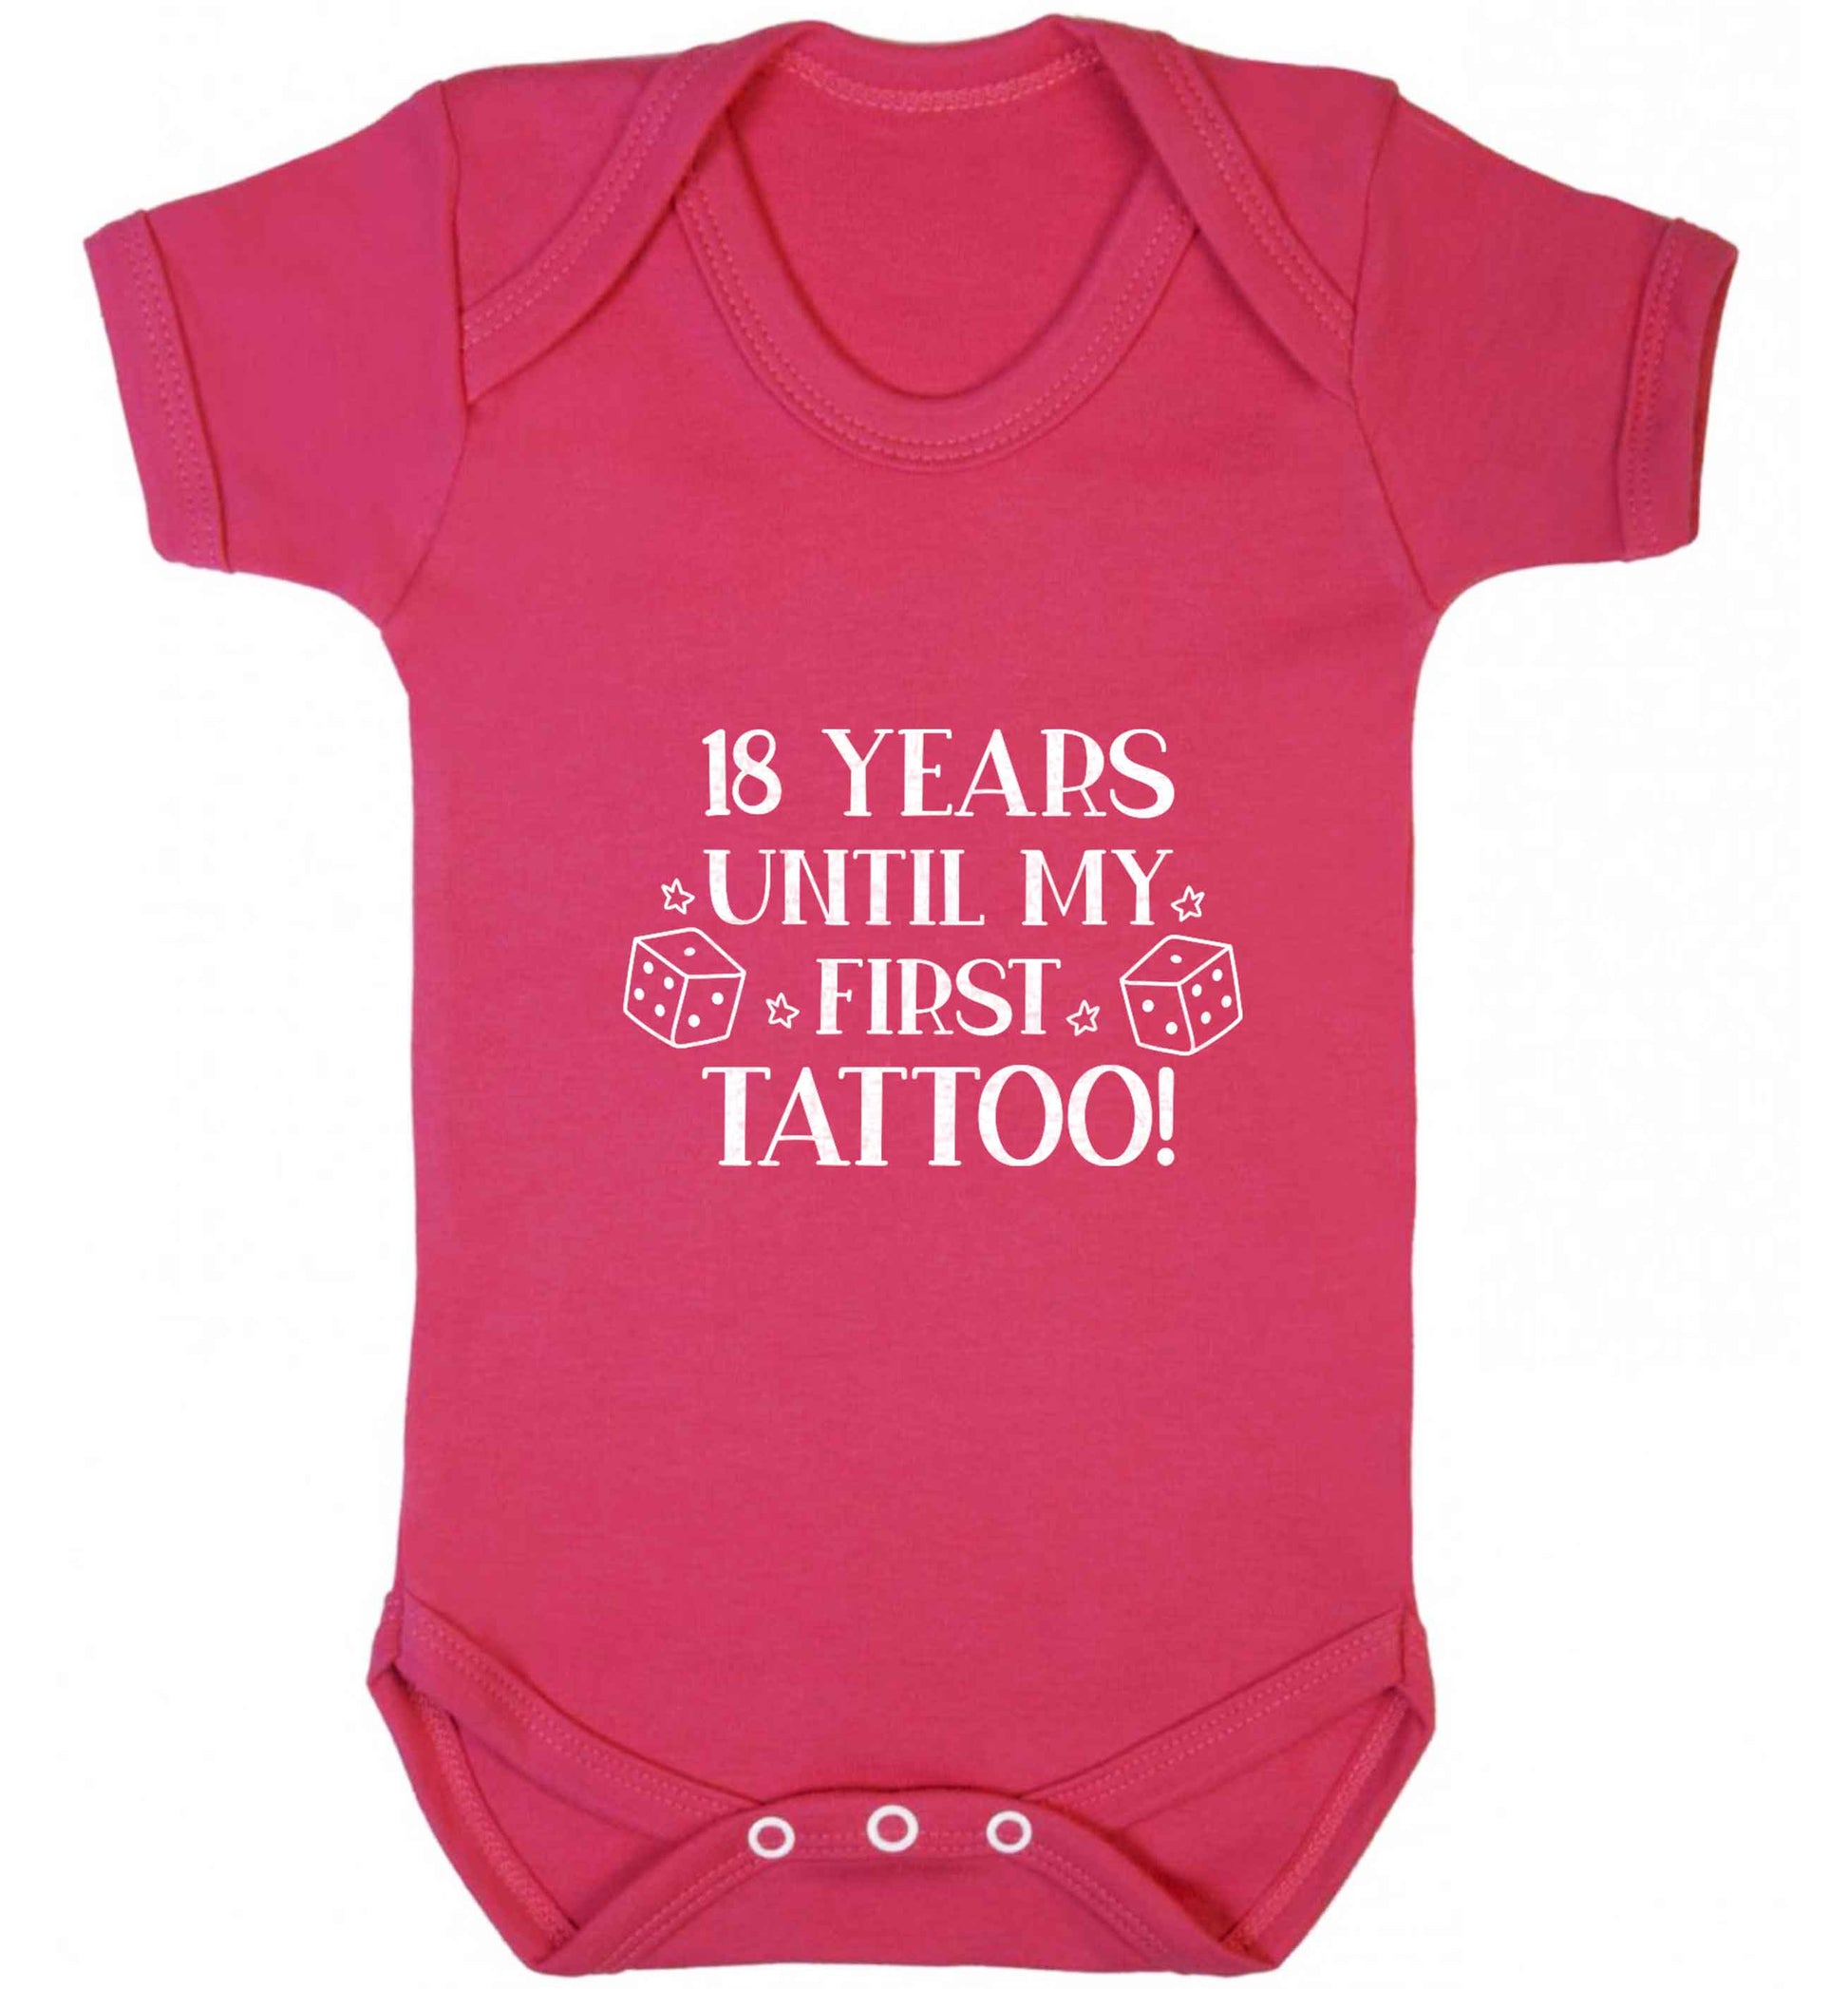 18 Years Until my First Tattoo baby vest dark pink 18-24 months